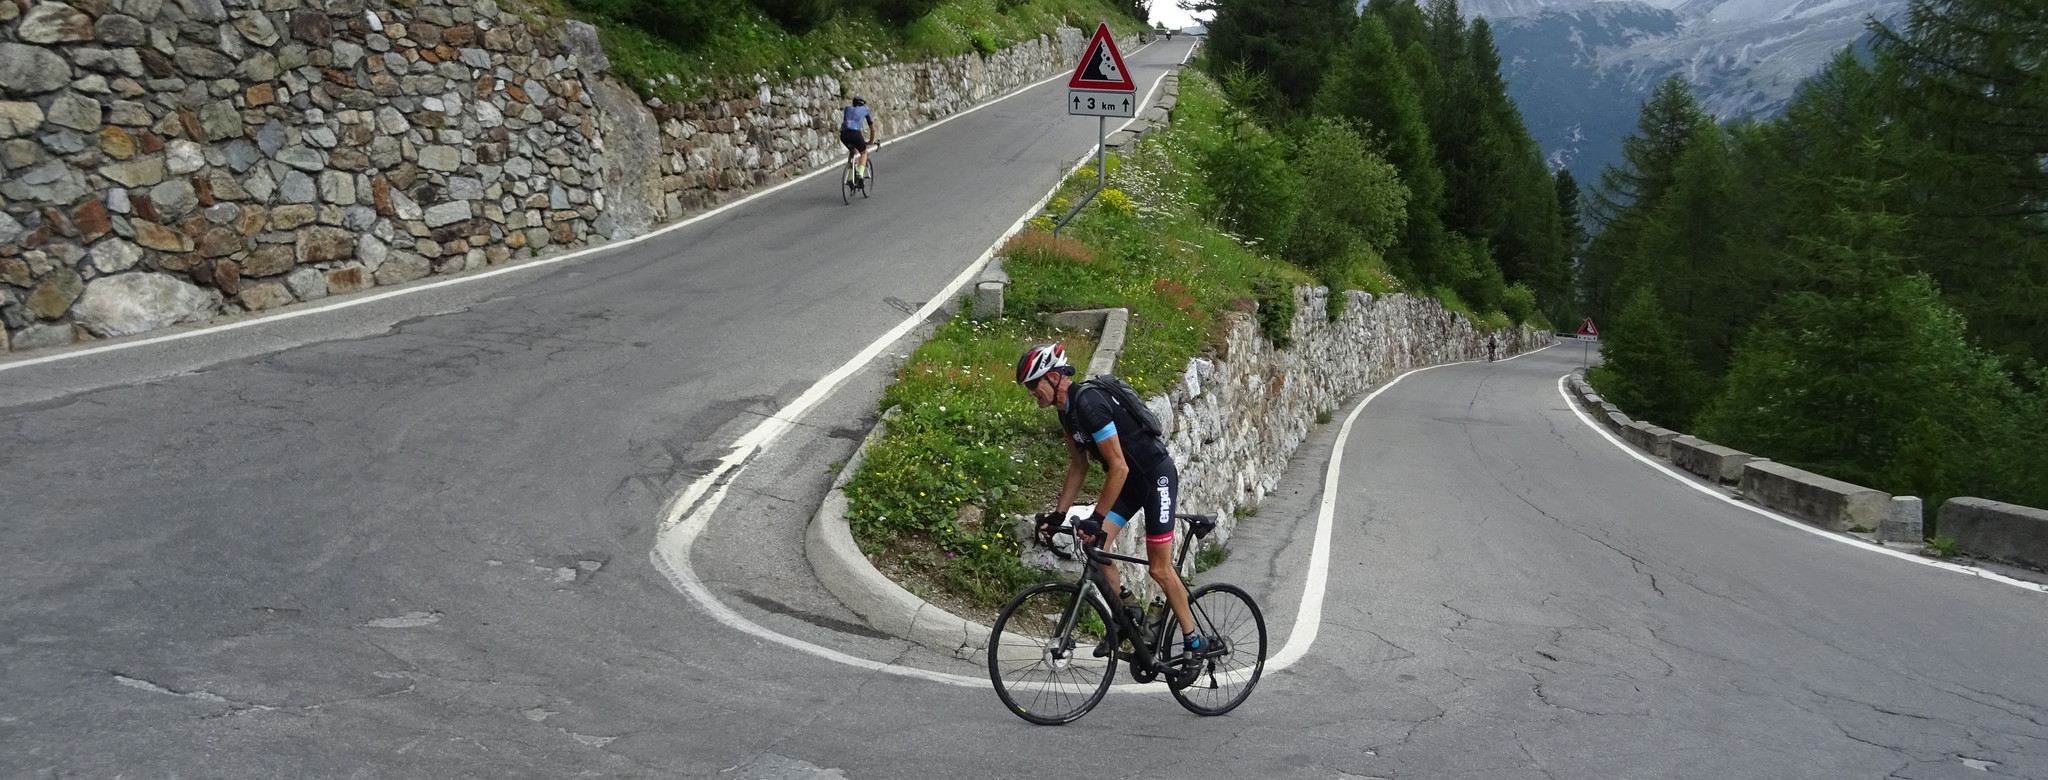 Pässelexikon Appenzell (Schweiz) für Rennradfahrer